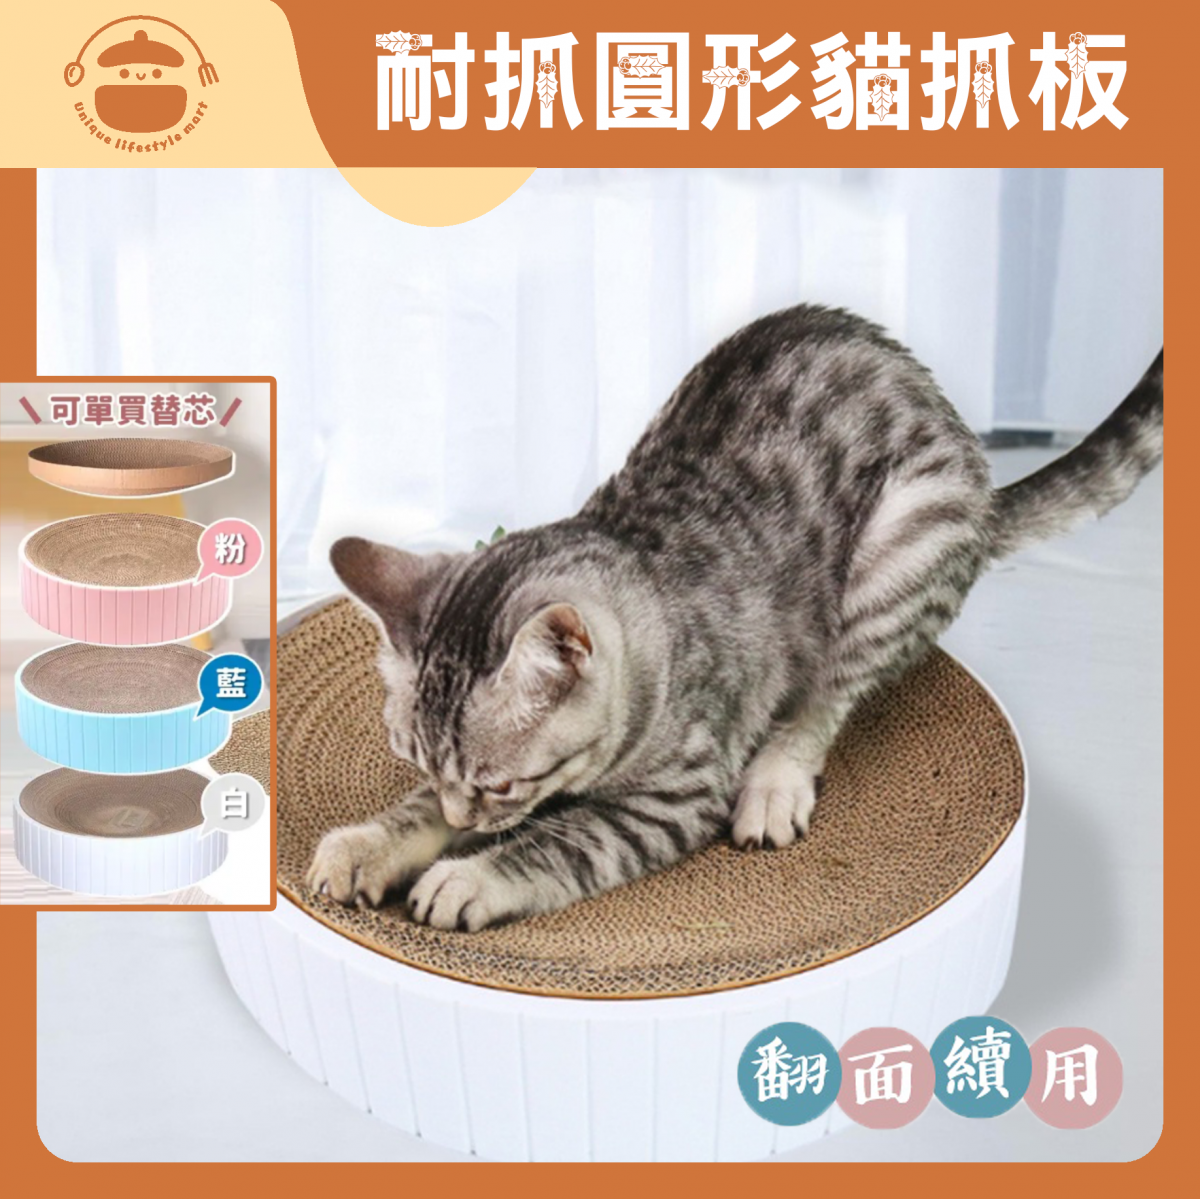 Anti-scratch round cat scratching board/bowl-shaped cat nest (Scratch Board Can Be Replaced)